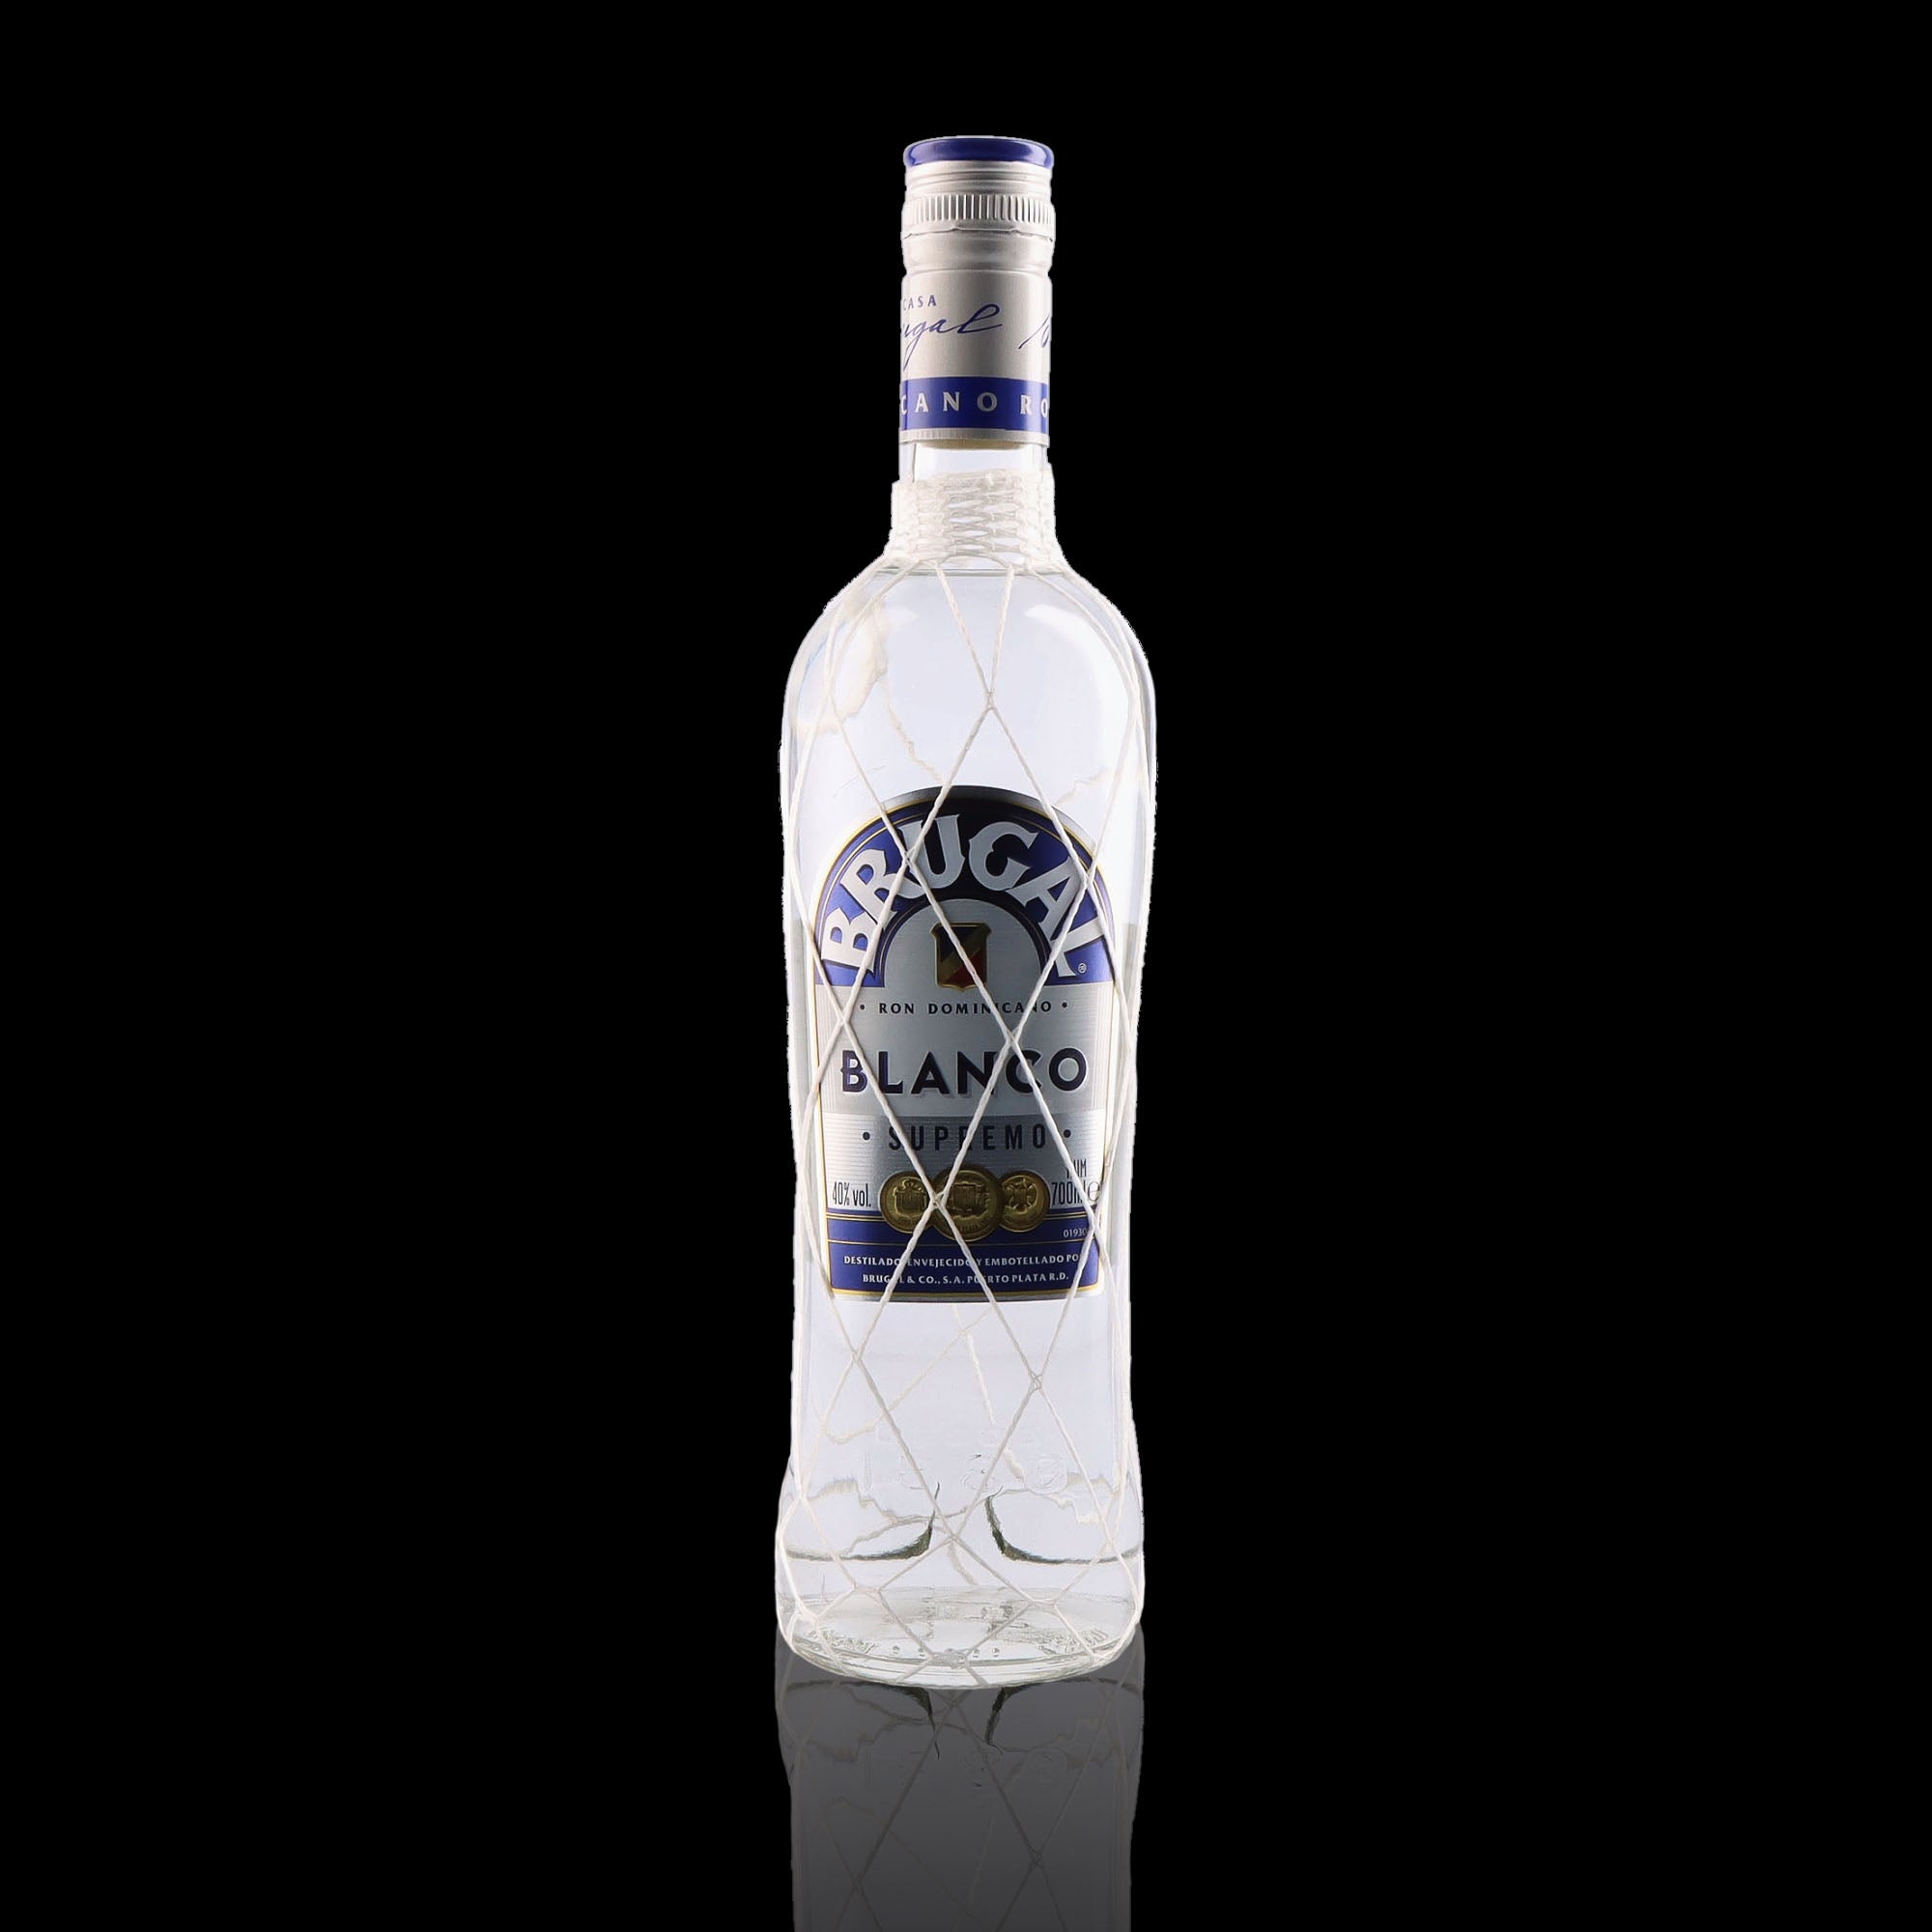 Une bouteille de rhum blanc, de la marque Brugal, nommée Blanco Supremo.